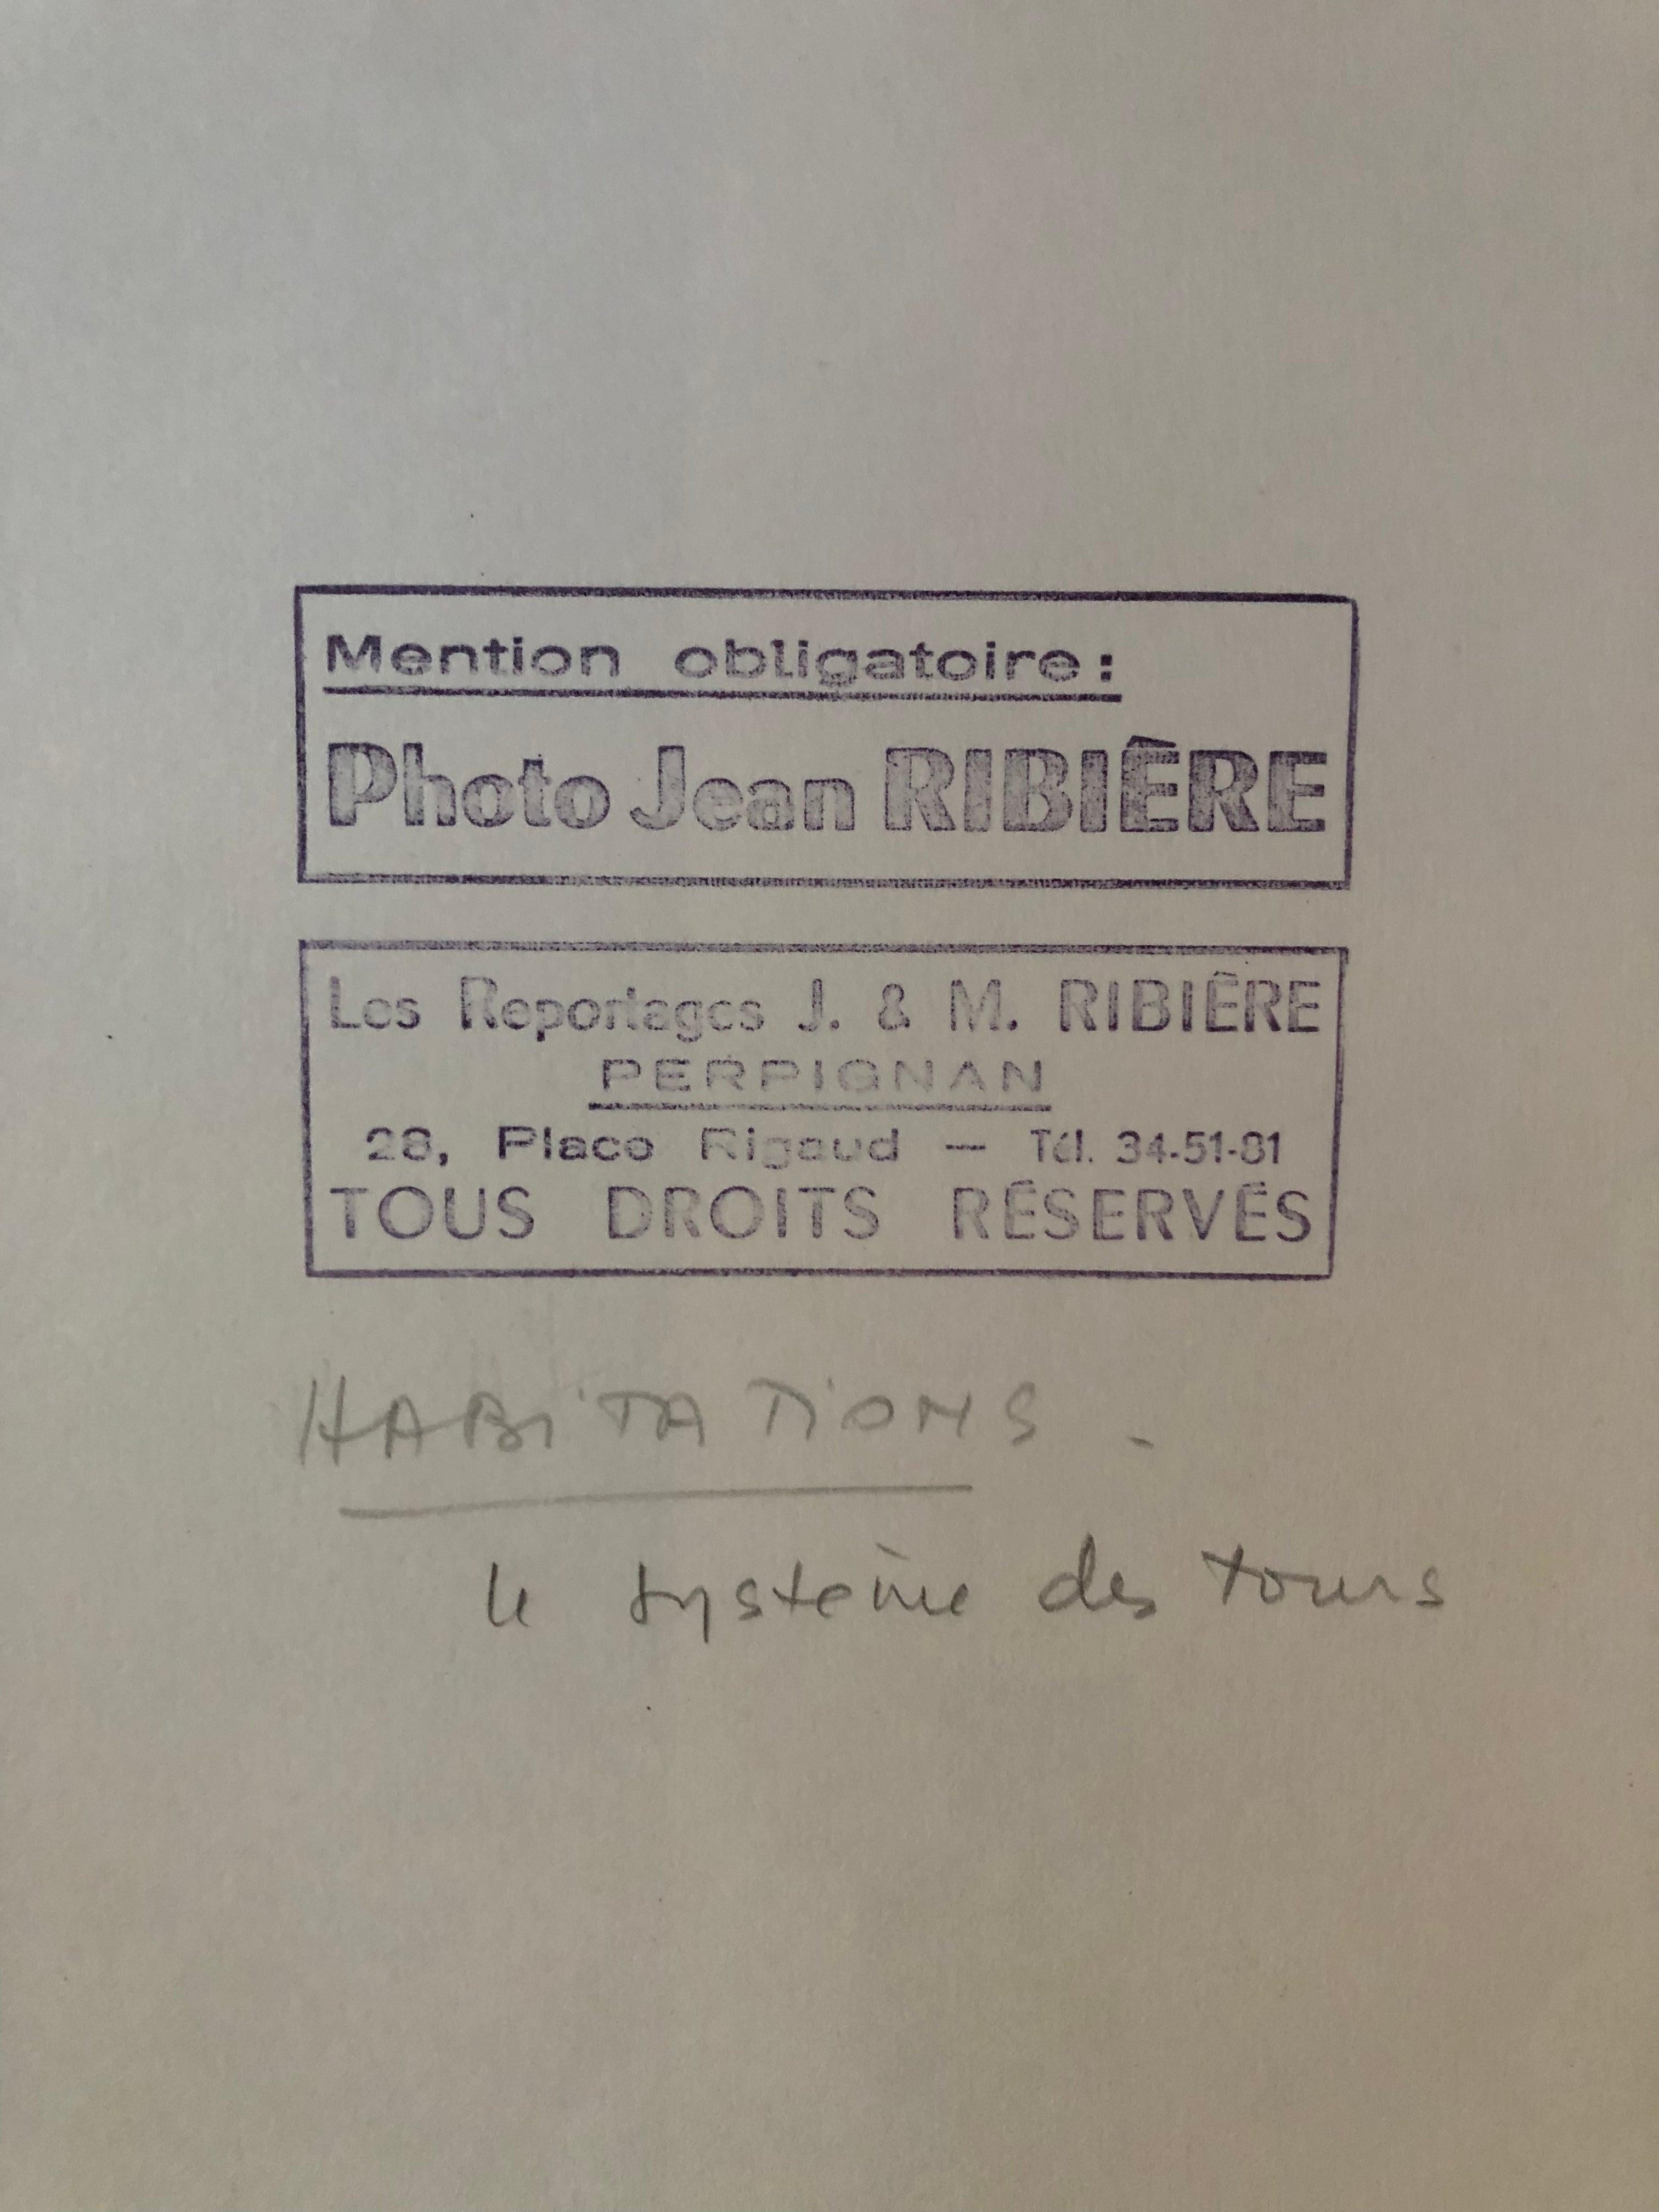 Jean Ribière, bekannter Fotograf, war nationaler Vizepräsident der A.N.J.R.P.C. (Nationale Vereinigung von Journalisten, Reportern, Fotografen und Filmemachern), deren Präsident Robert Doisneau war und deren Hauptmitglieder Henri Cartier-Bresson und